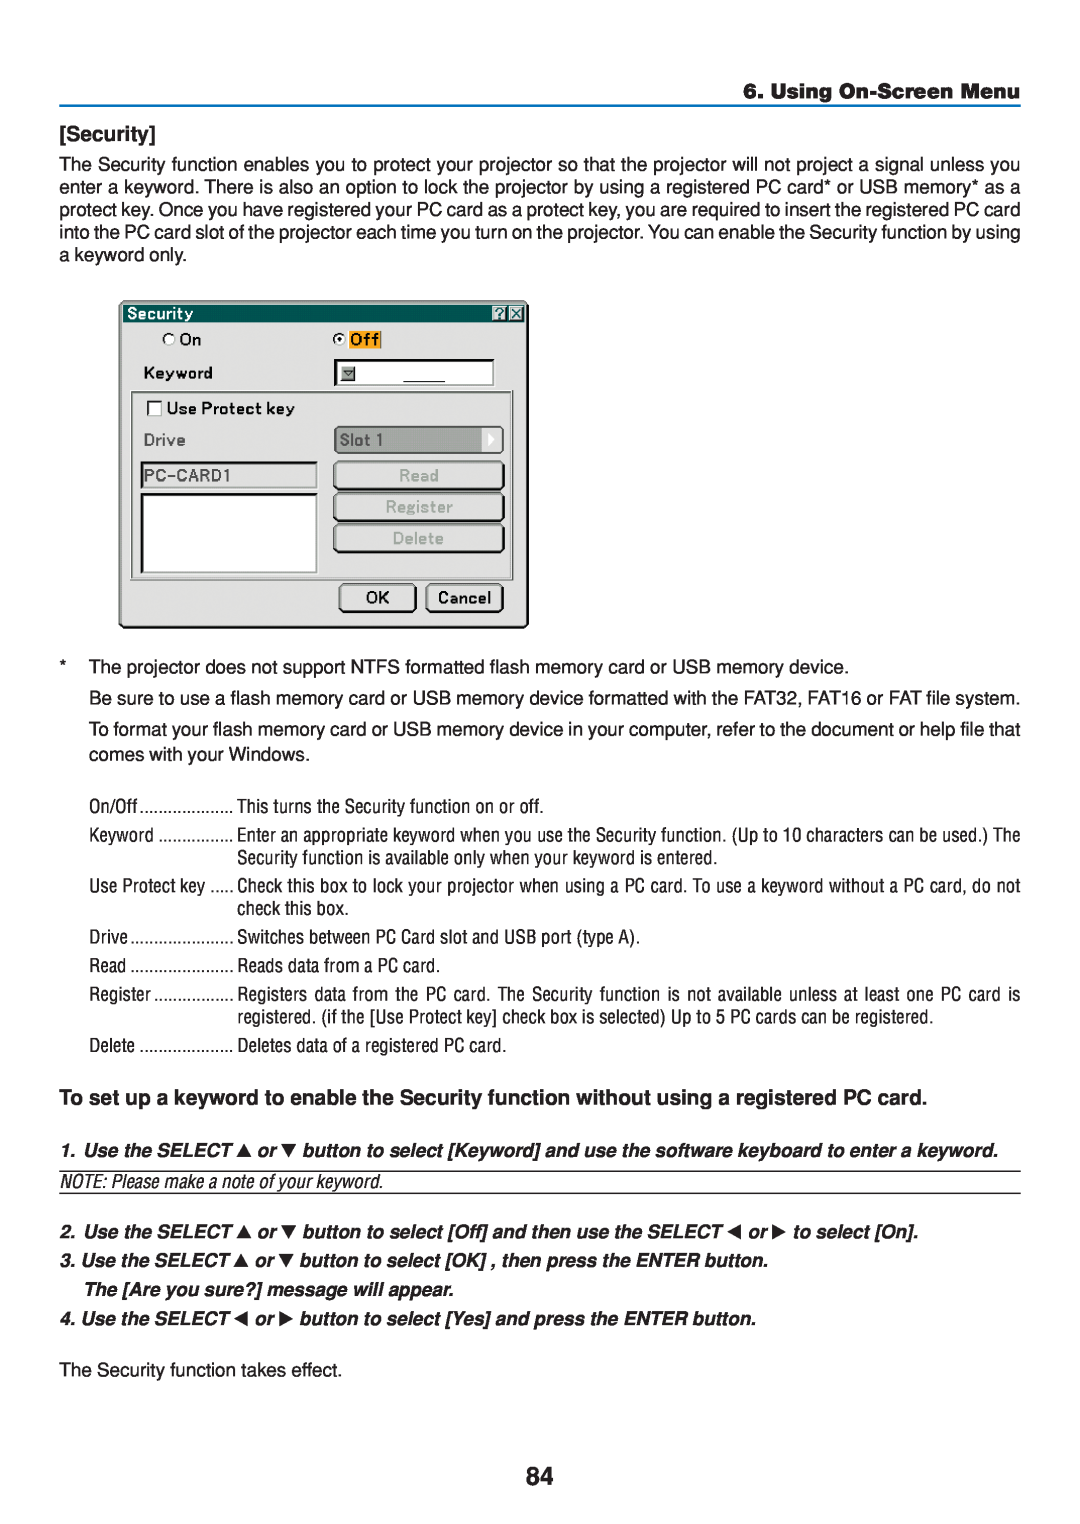 Dukane 8808 user manual Security, Using On-Screen Menu 